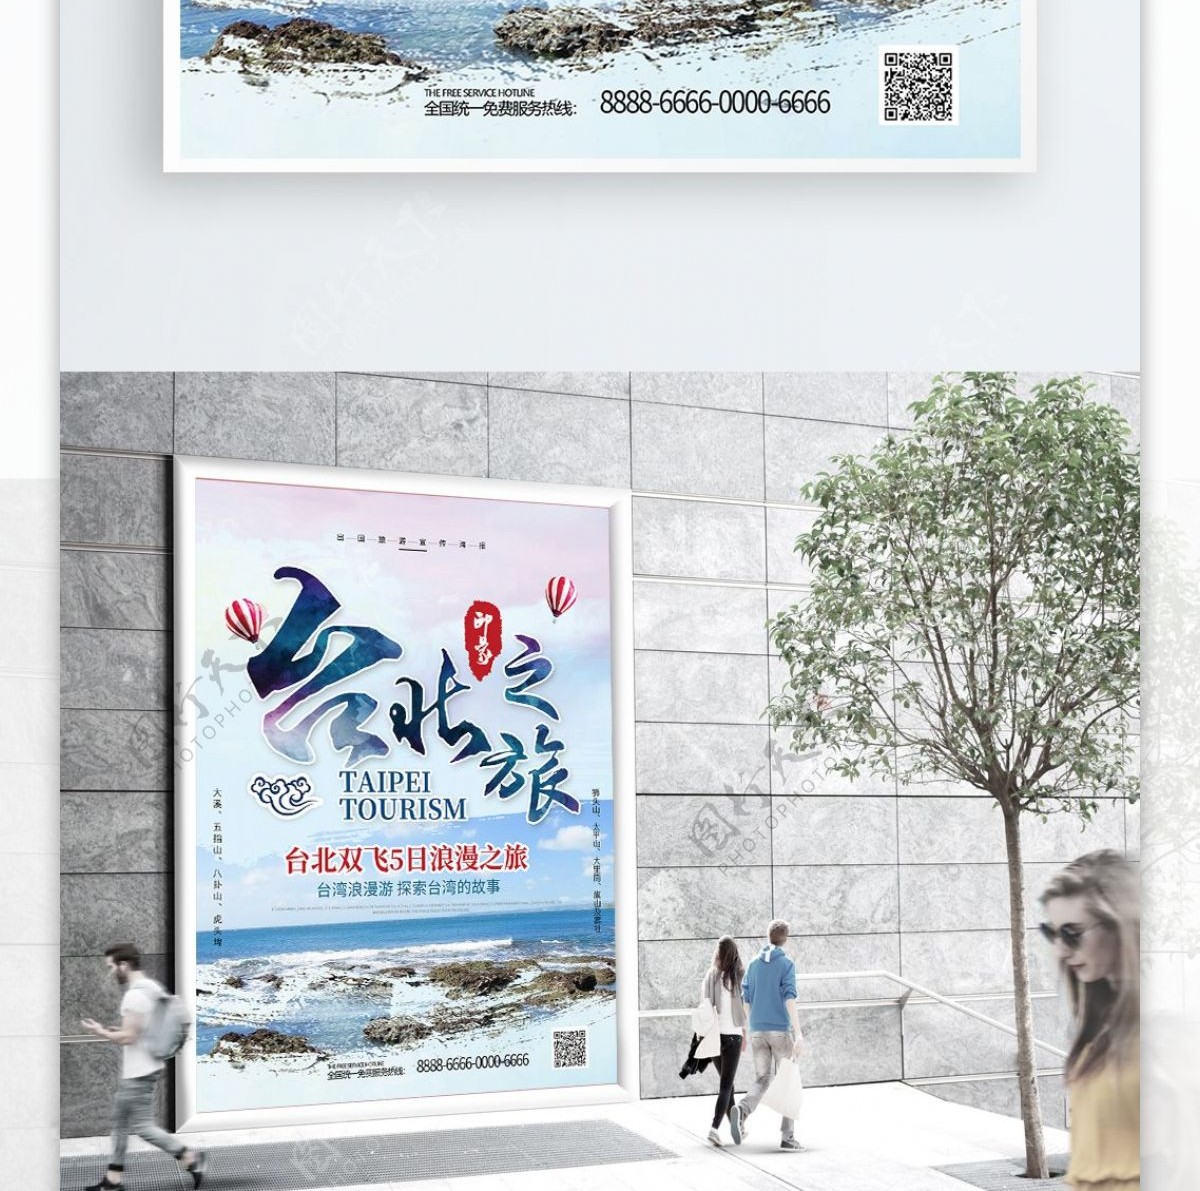 创意字体台北之旅台湾旅游海报